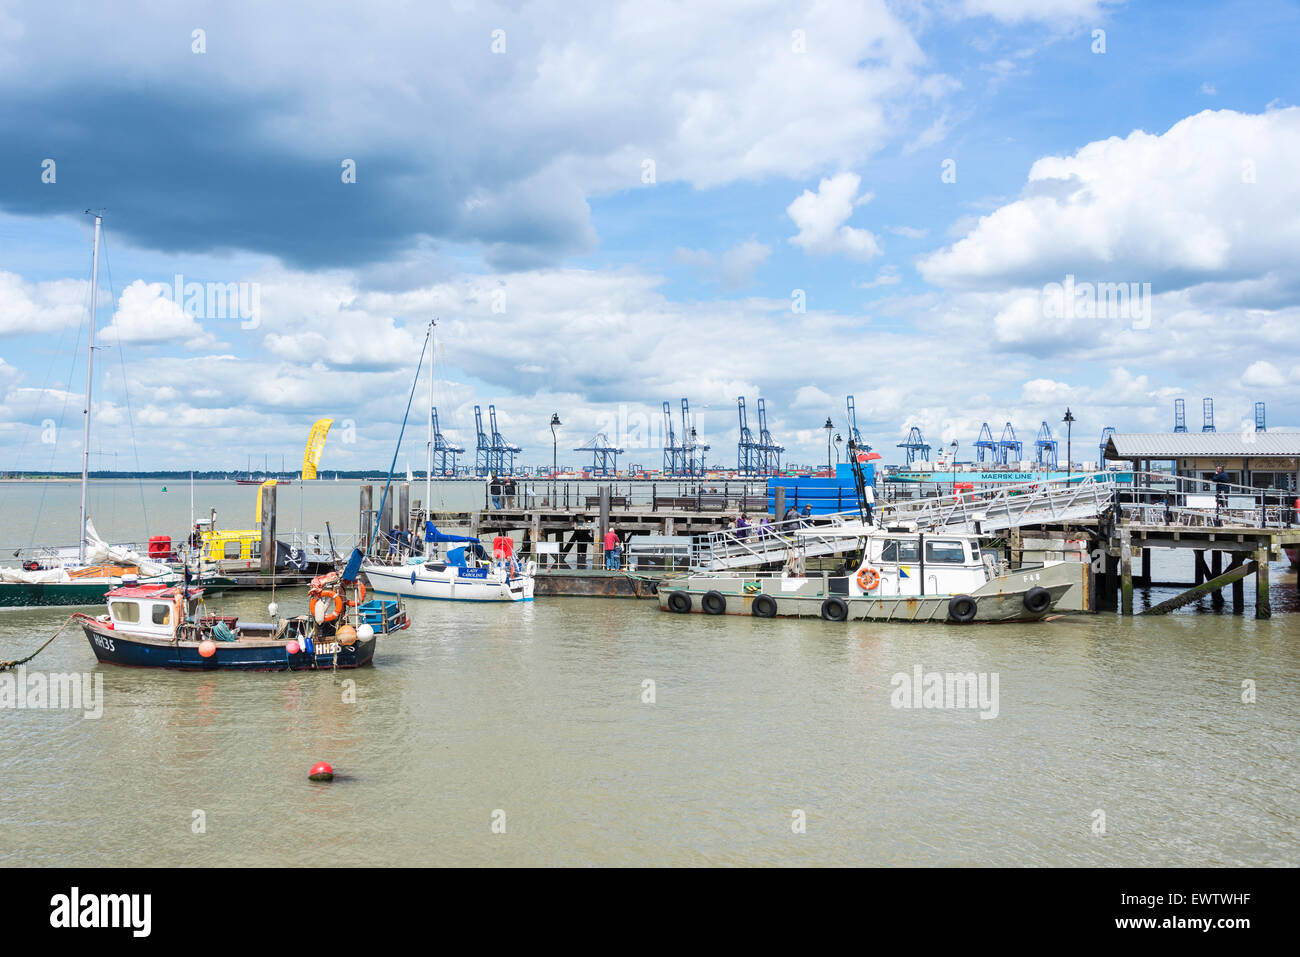 Ha'penny Pier et port à conteneurs, Harwich, Essex, Angleterre, Royaume-Uni Banque D'Images